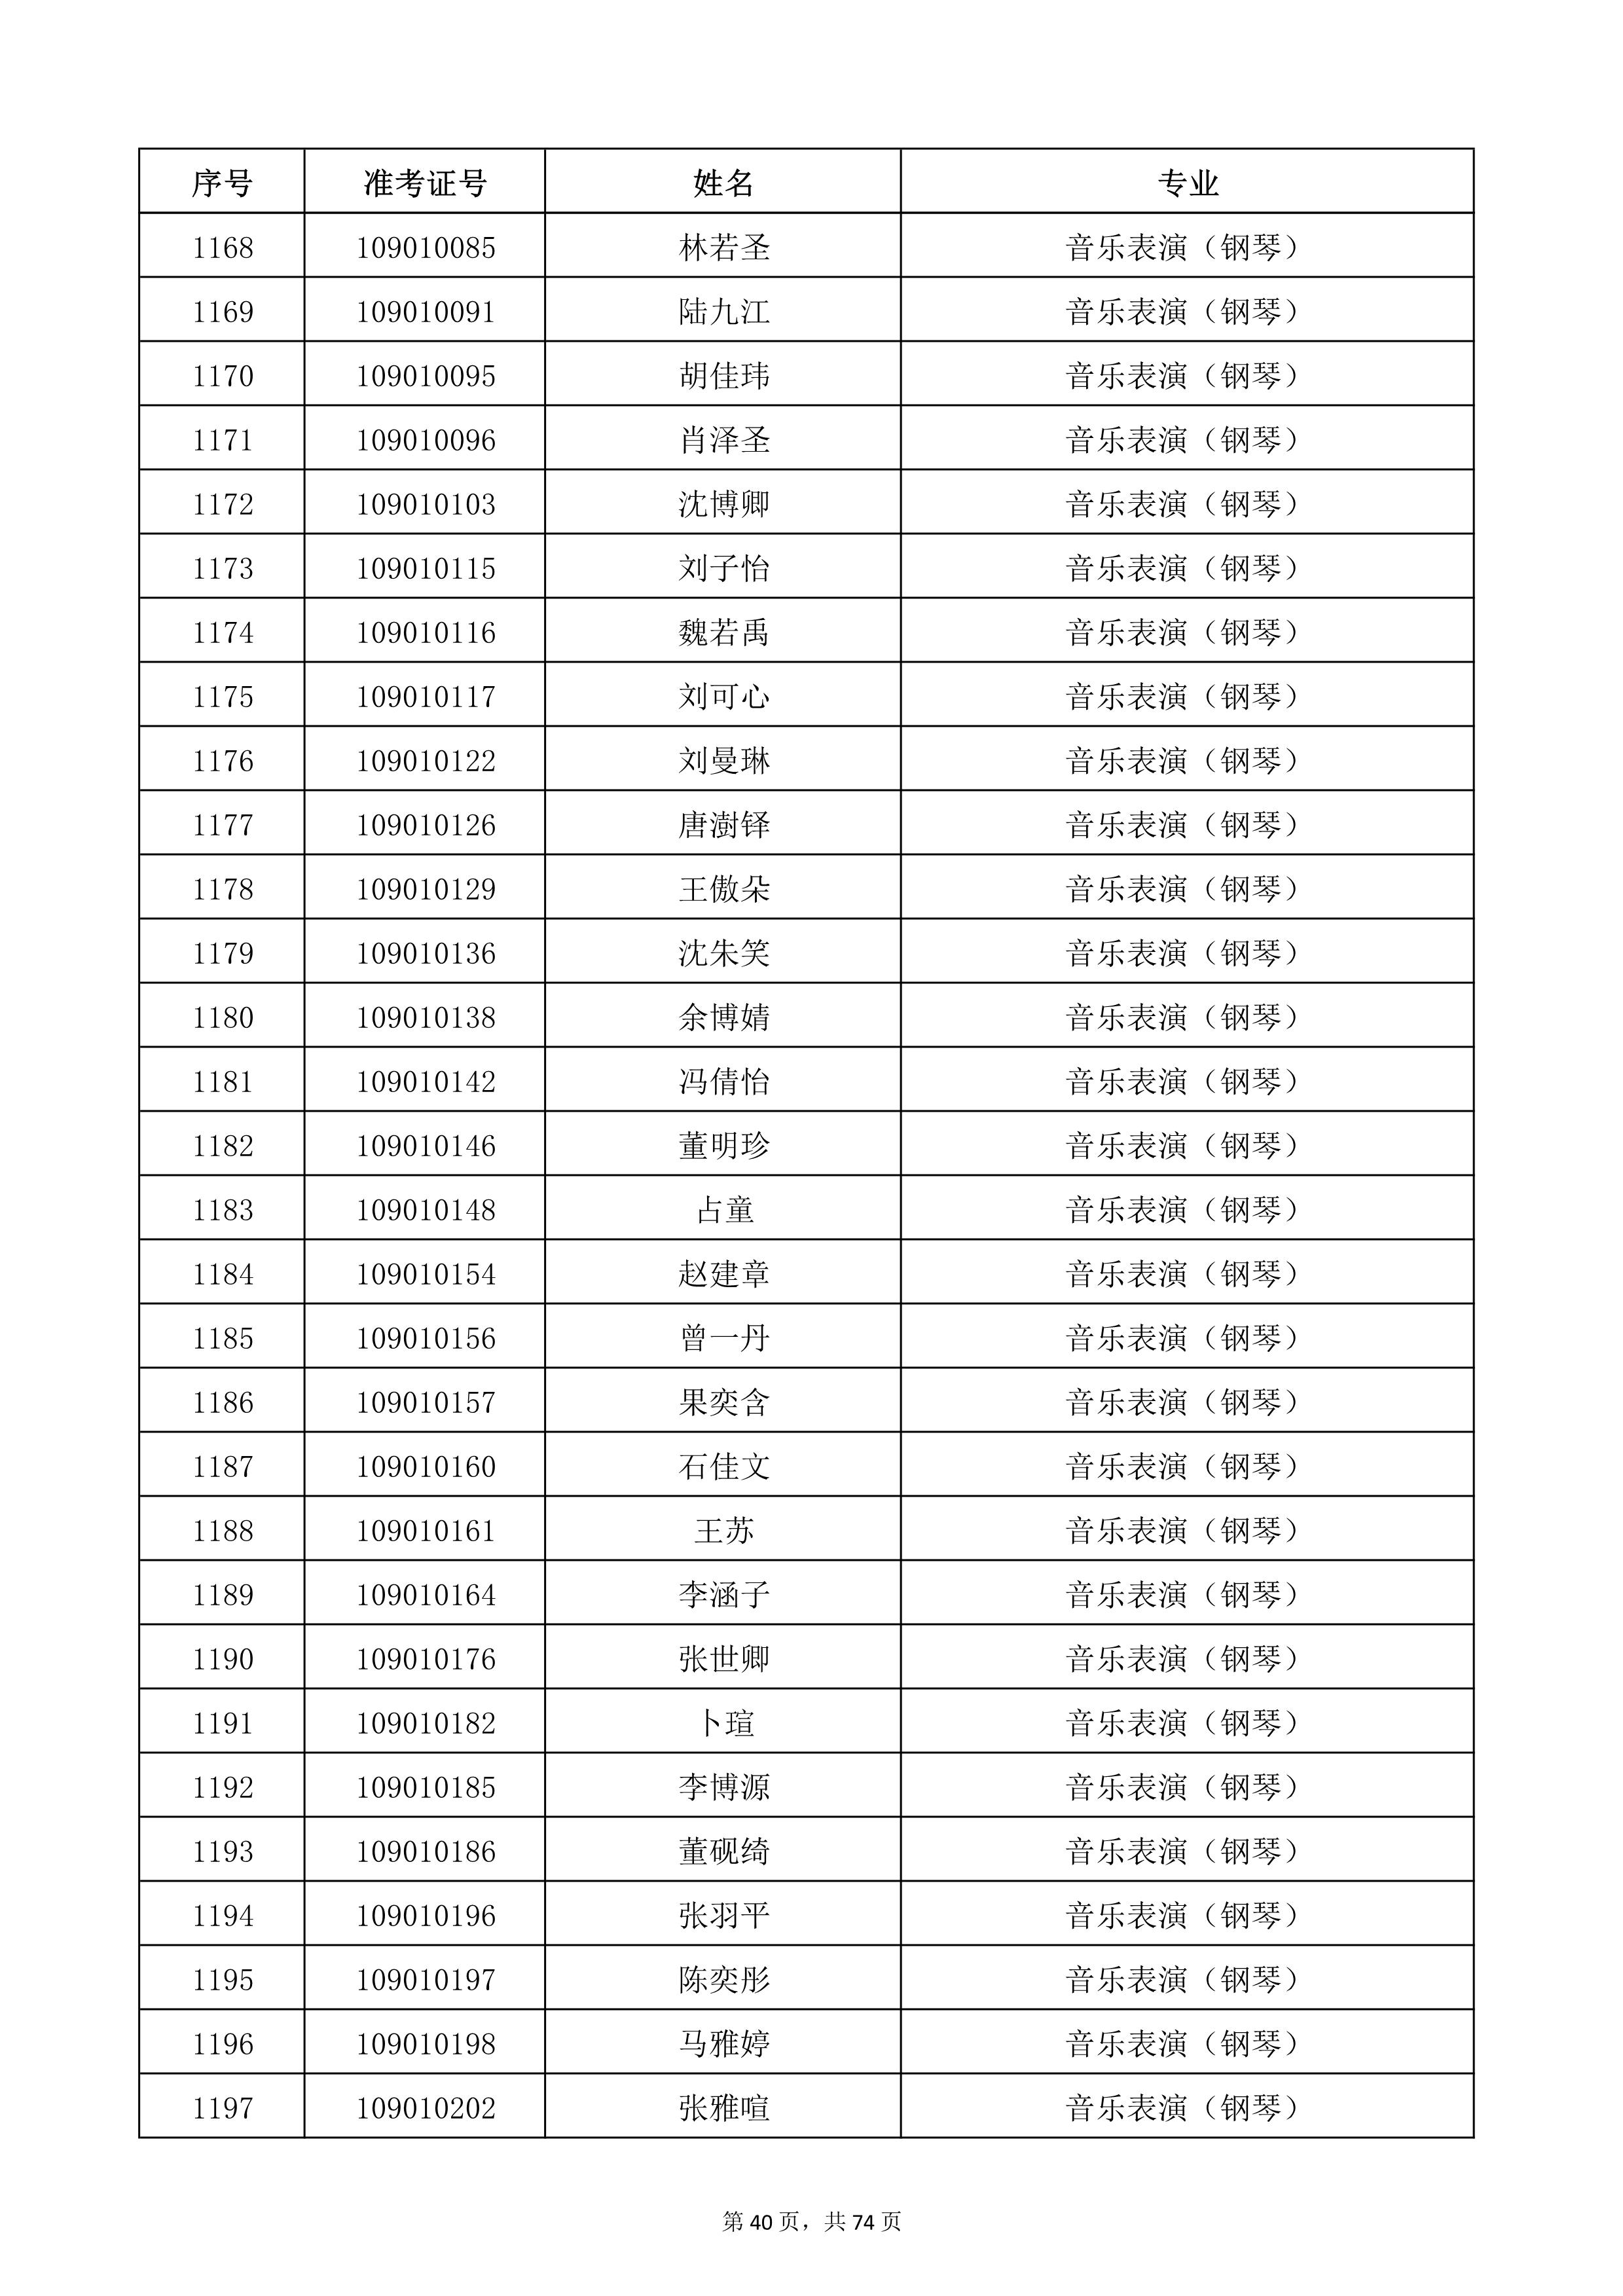 天津音乐学院2022年本科招生考试复试名单_40.jpg